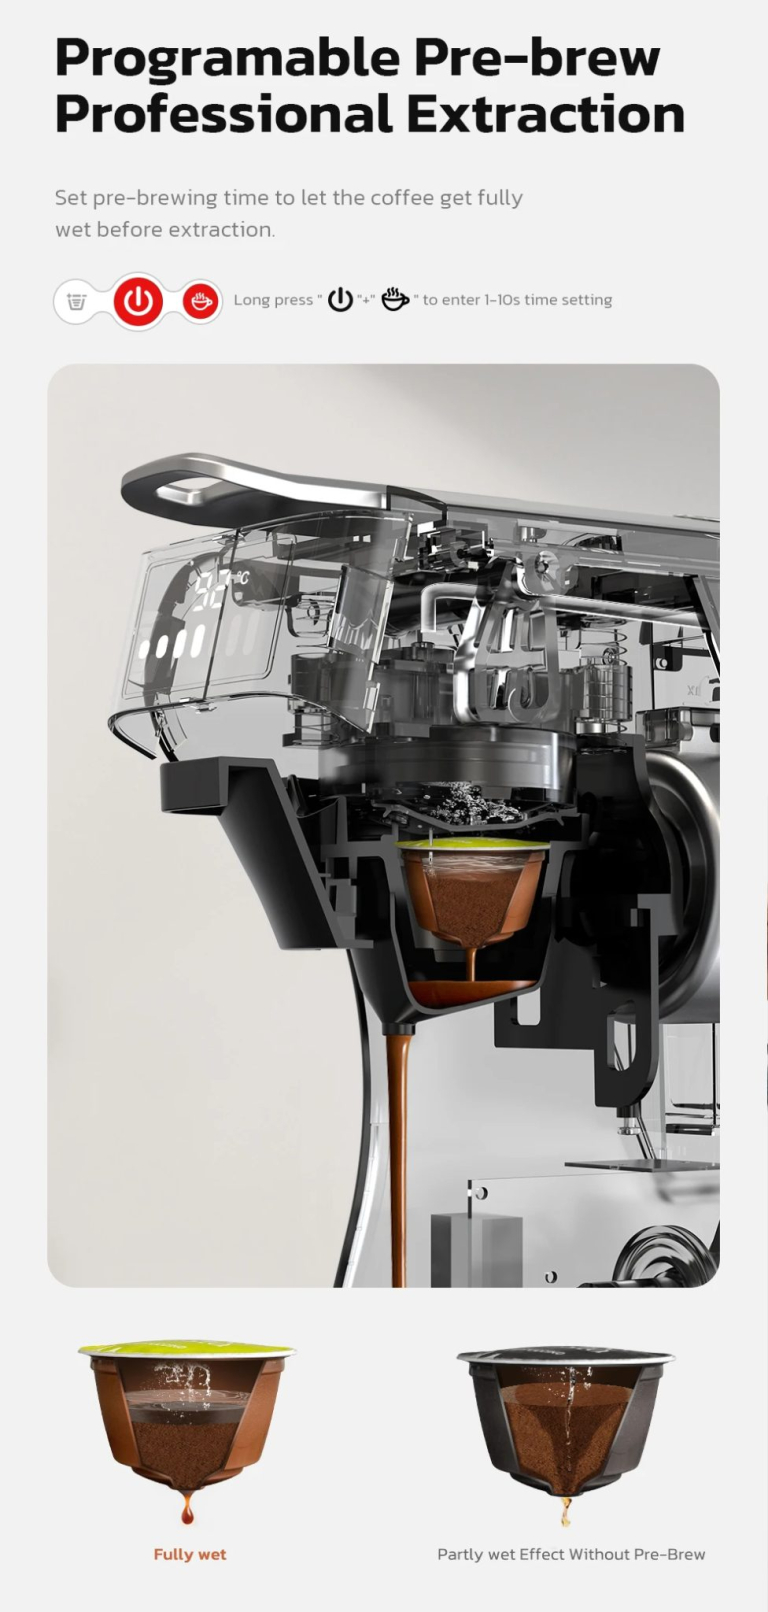 Itt az új HiBrew kávéfőző, ami egy 6 az 1-ben gép lett 9